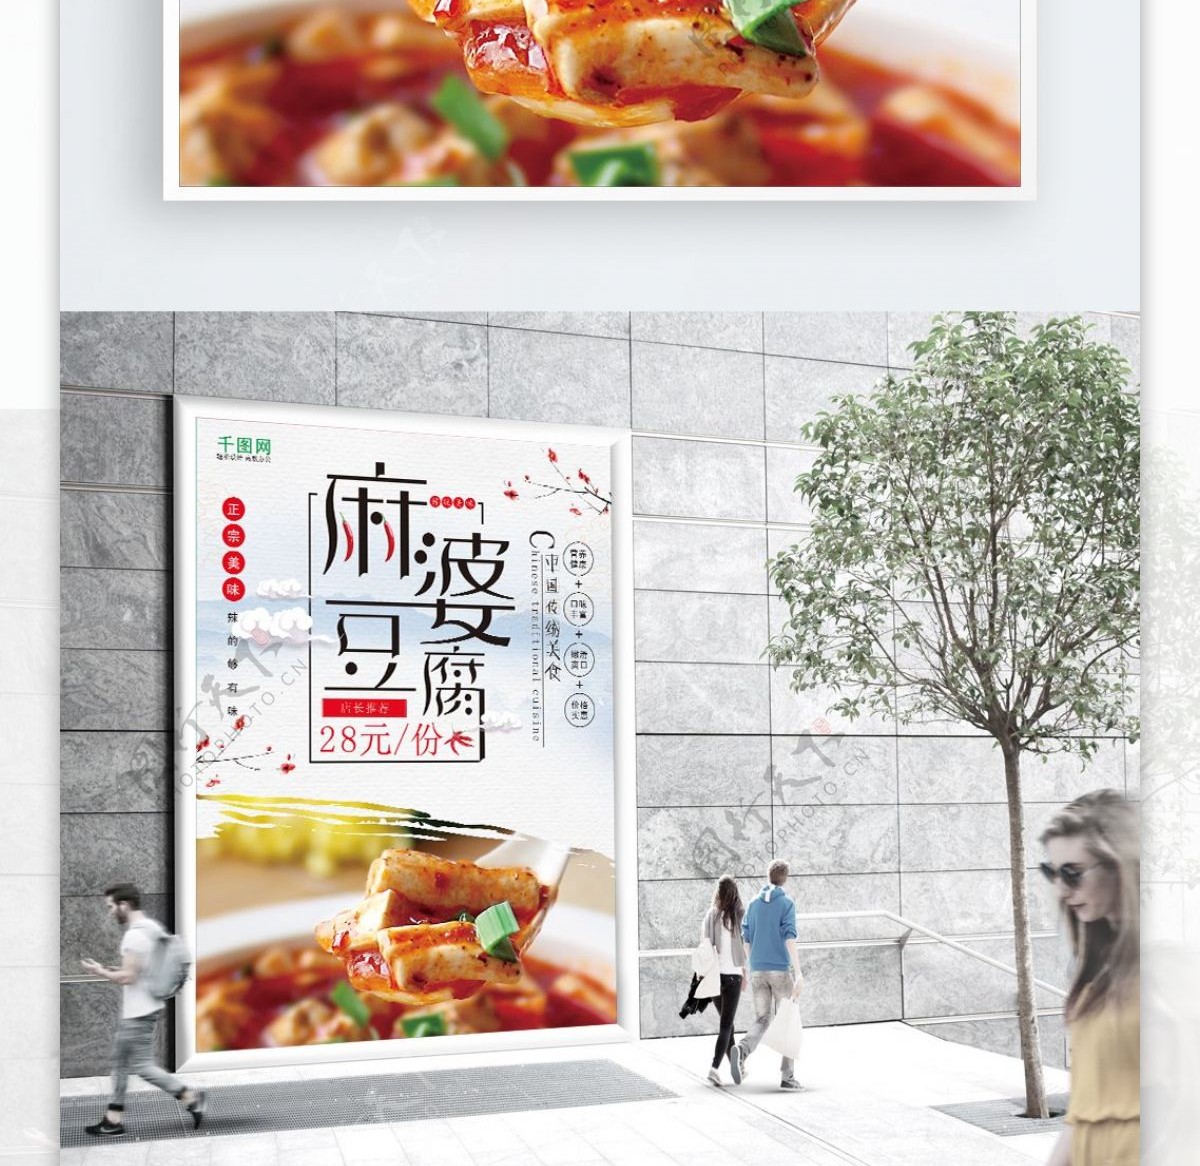 麻婆豆腐美食海报